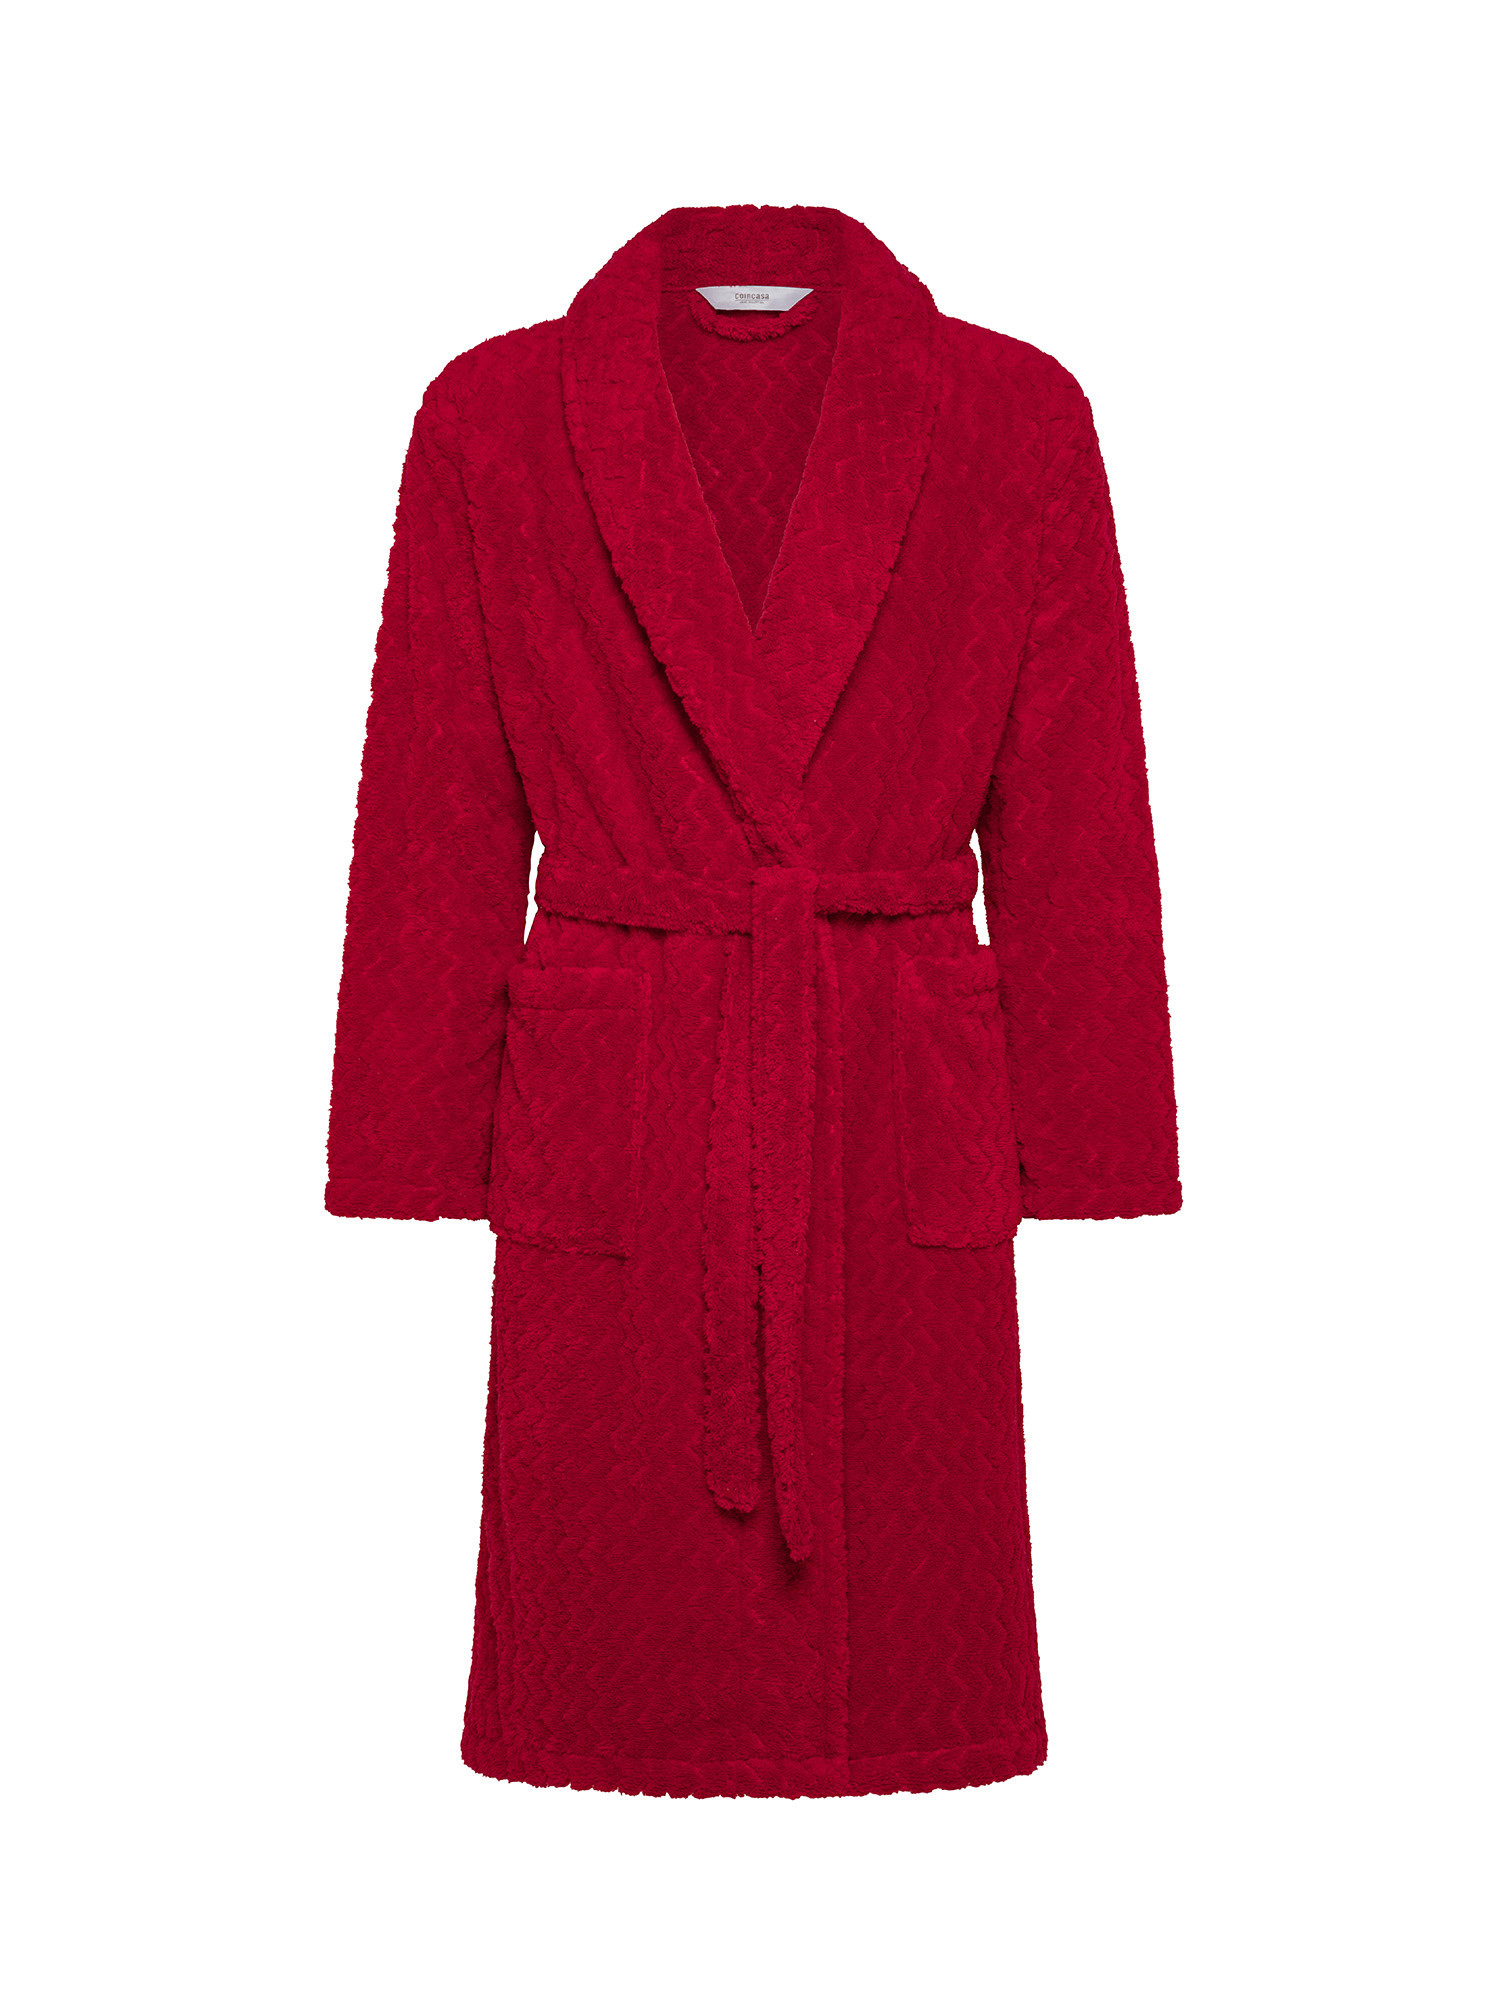 цена Флисовый халат с жаккардовым узором Coincasa, красный